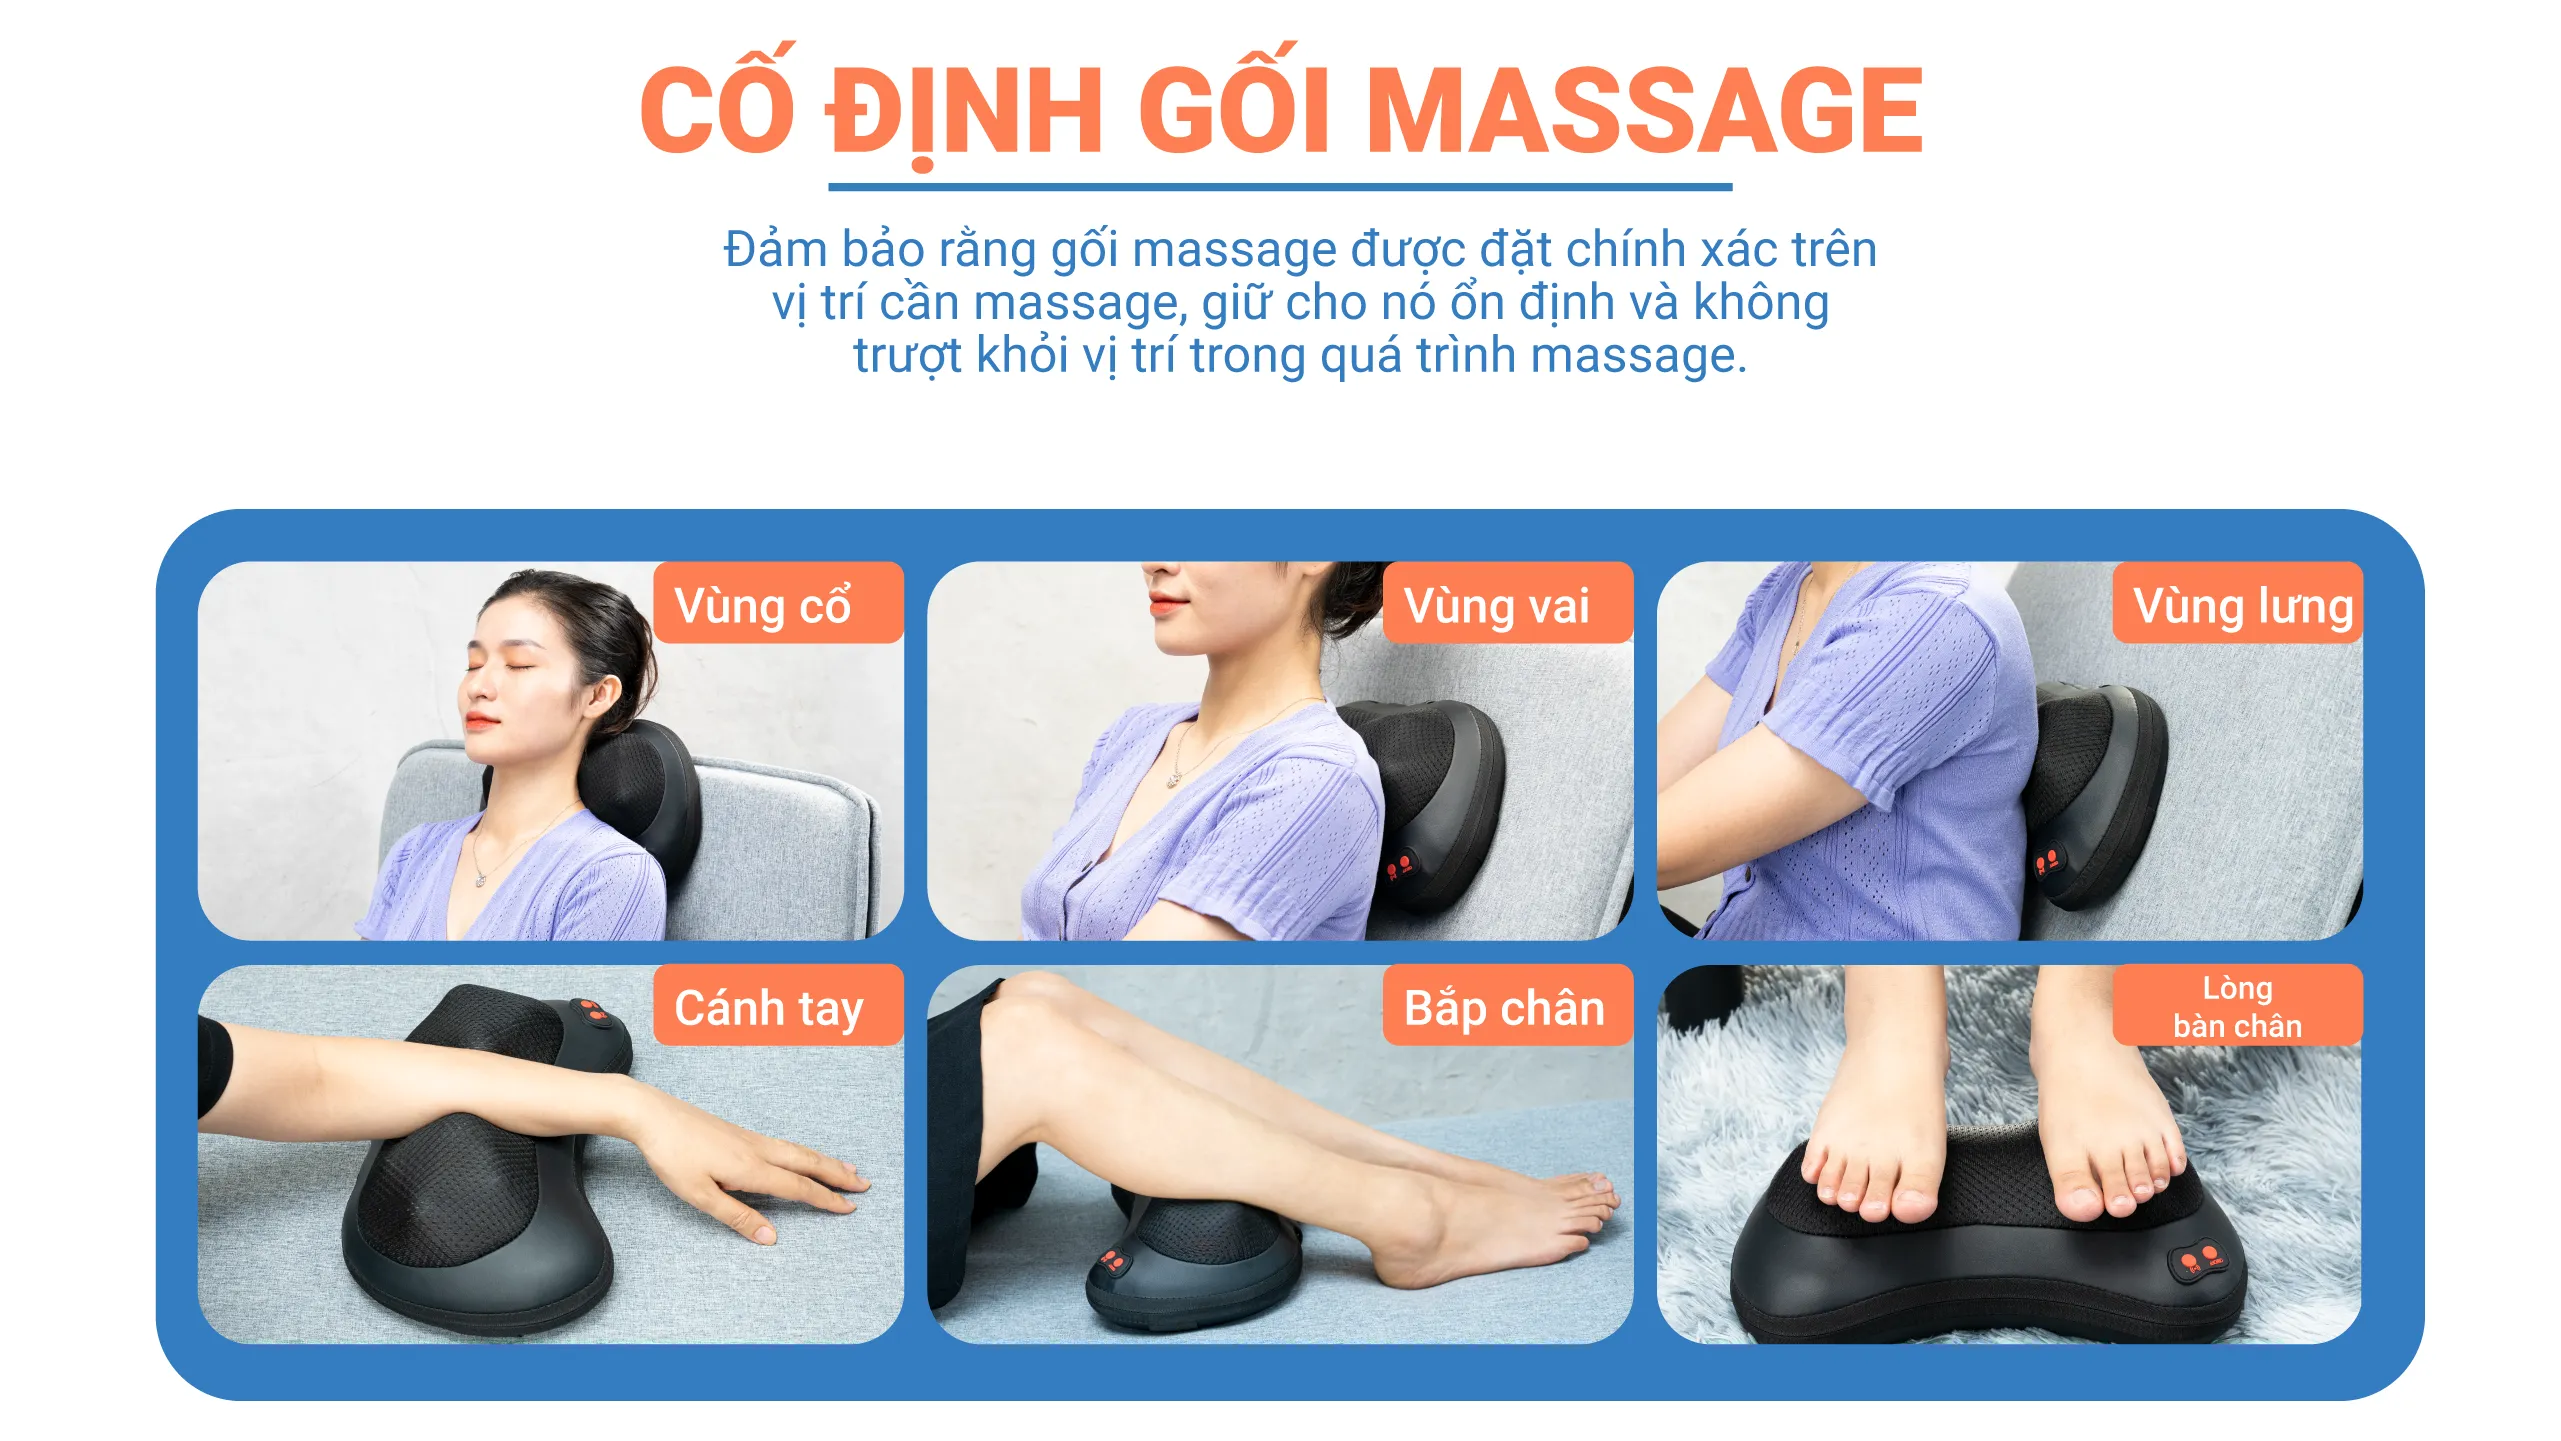 Lưu ý cố định gối khi massage